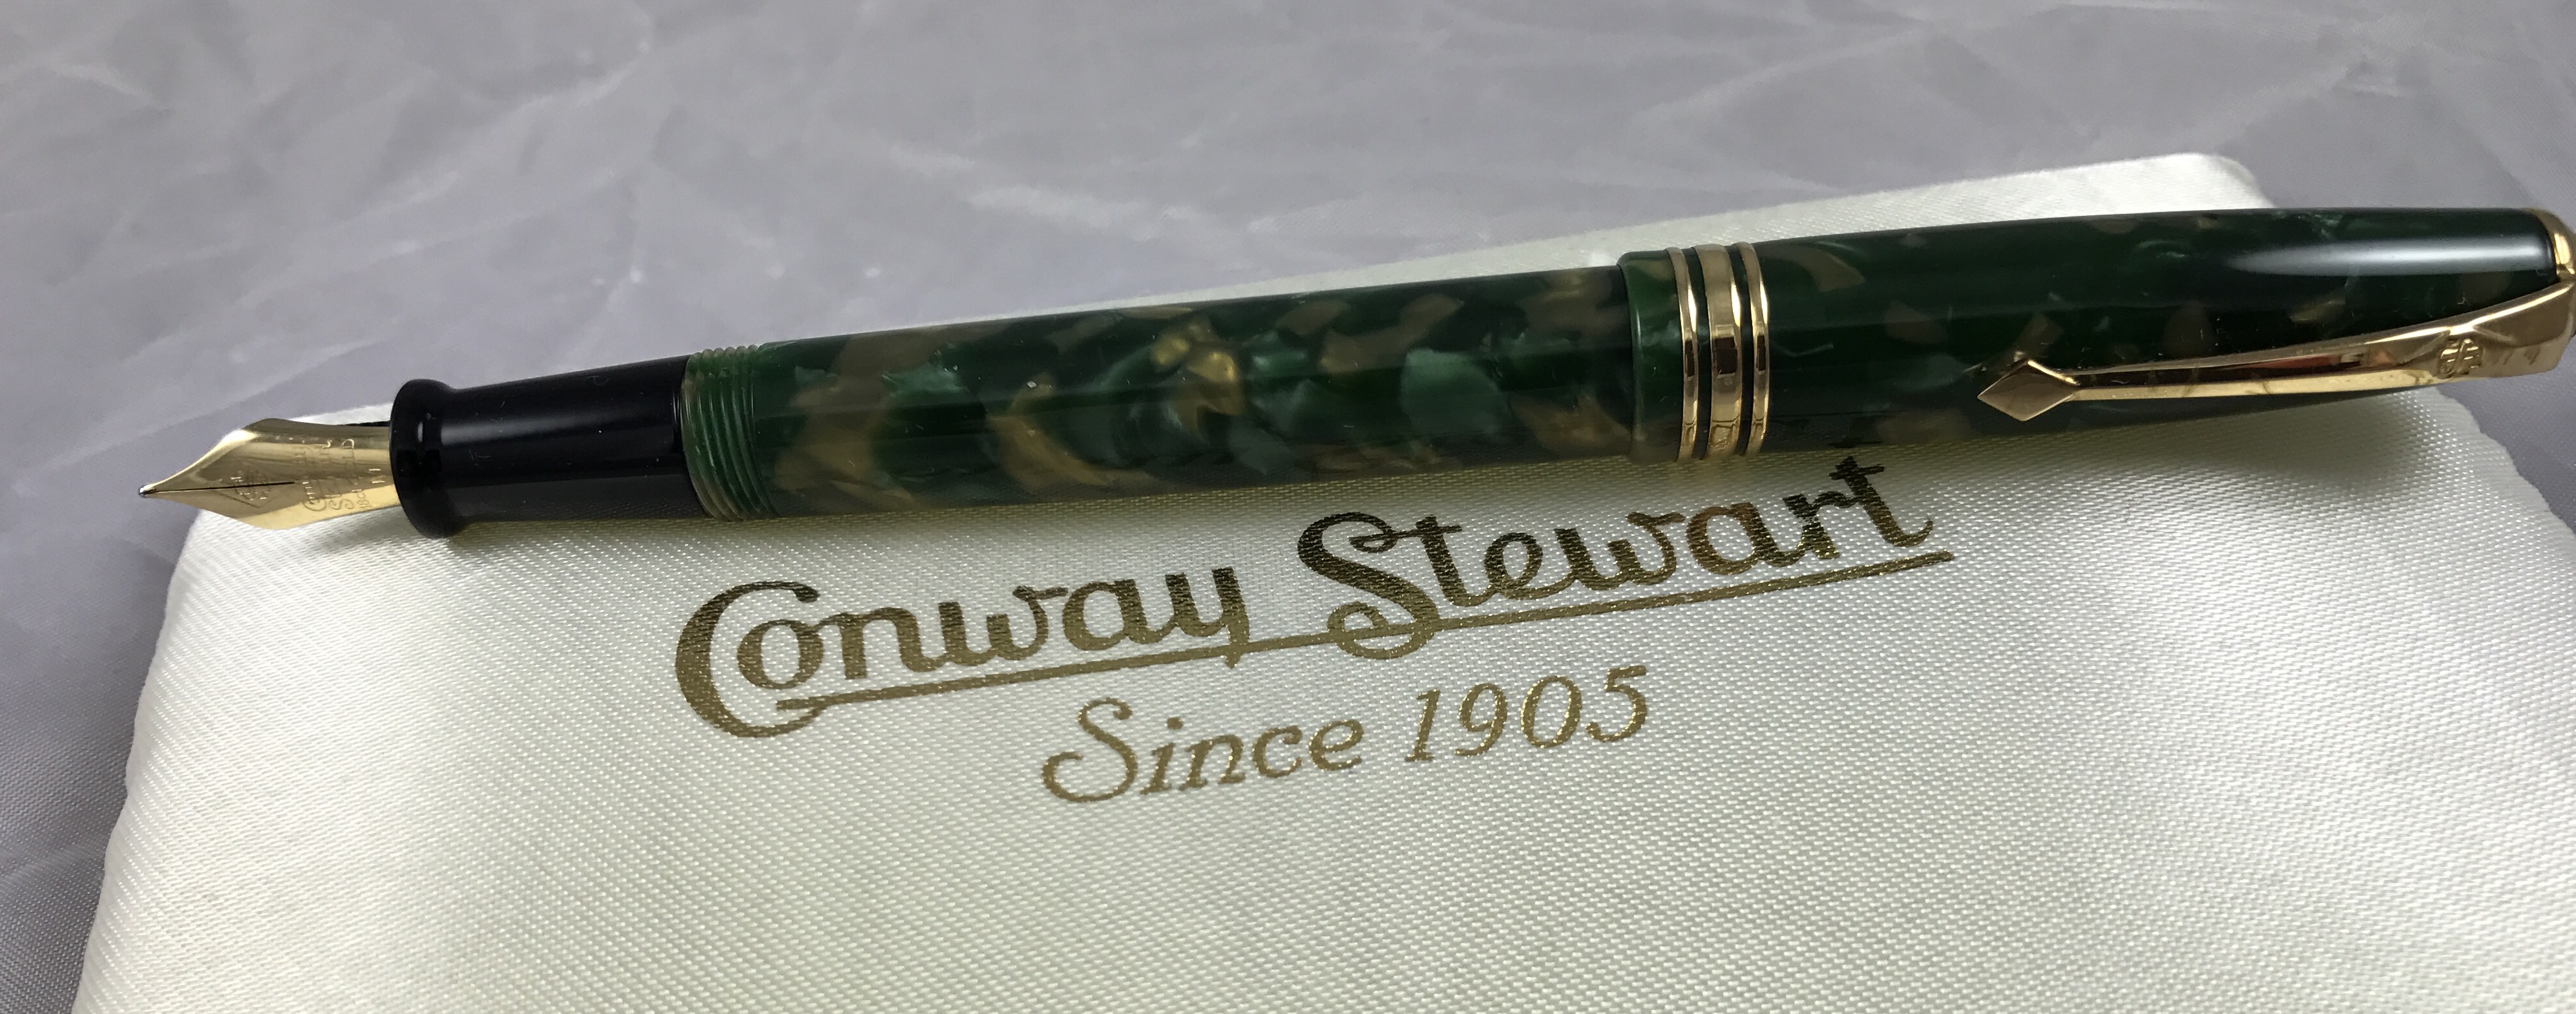 Conway Stewart 58 LE "Creme de Menthe" casein